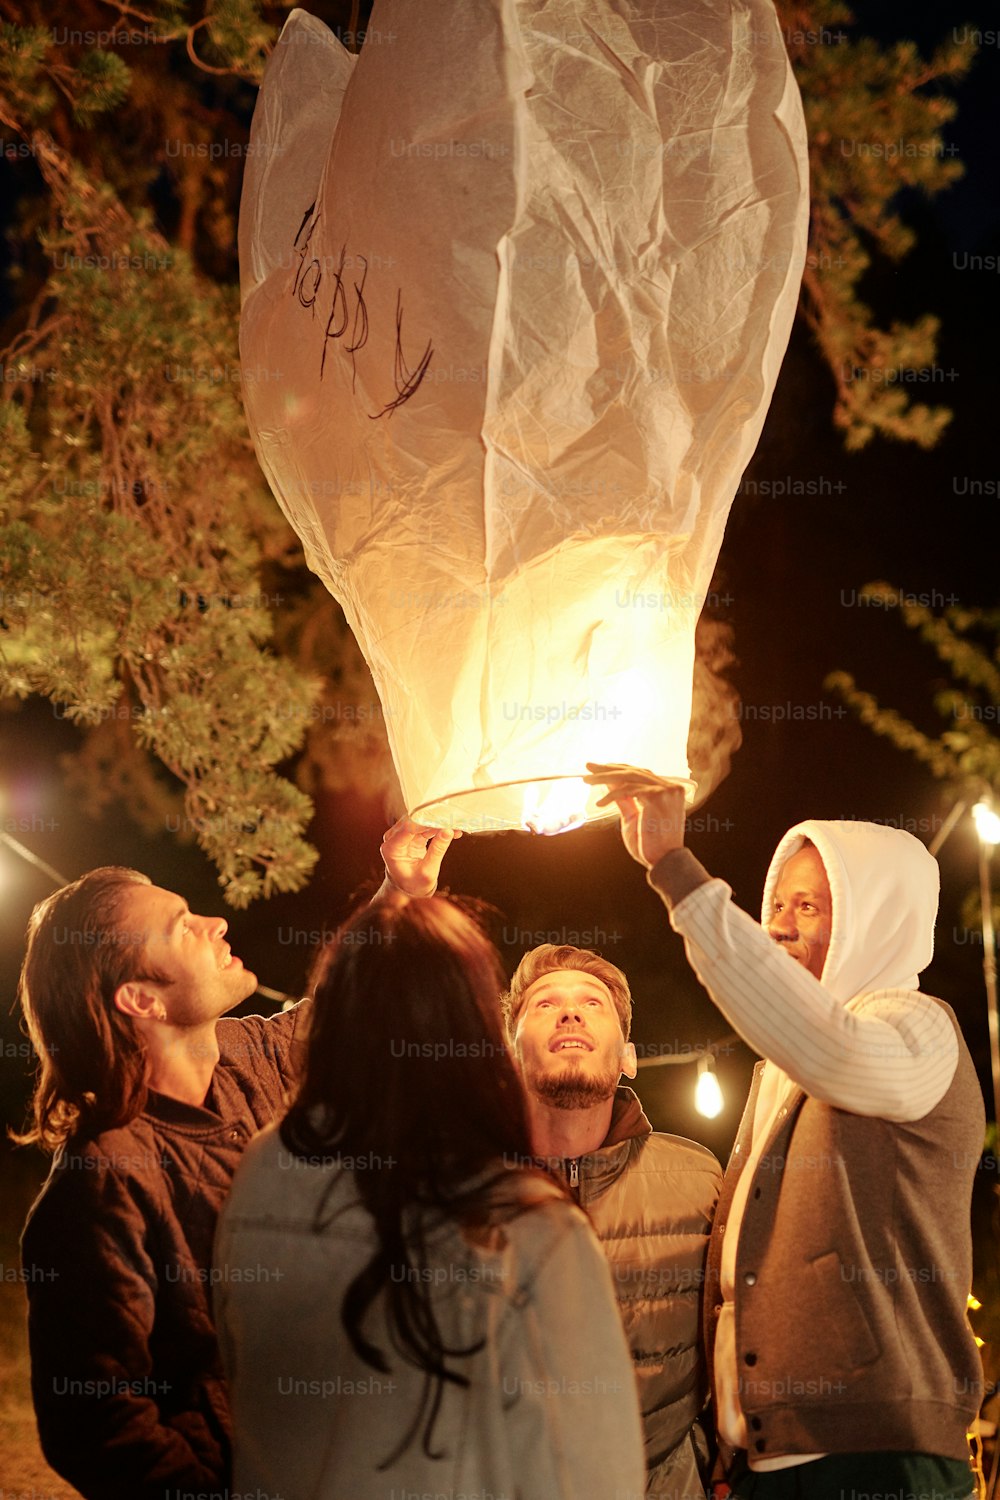 캐주얼웨어를 입은 다문화 젊은 친구들이 밤에 소나무 아래에서 모여 조명이 켜진 대형 풍선을 들여다보고 있다